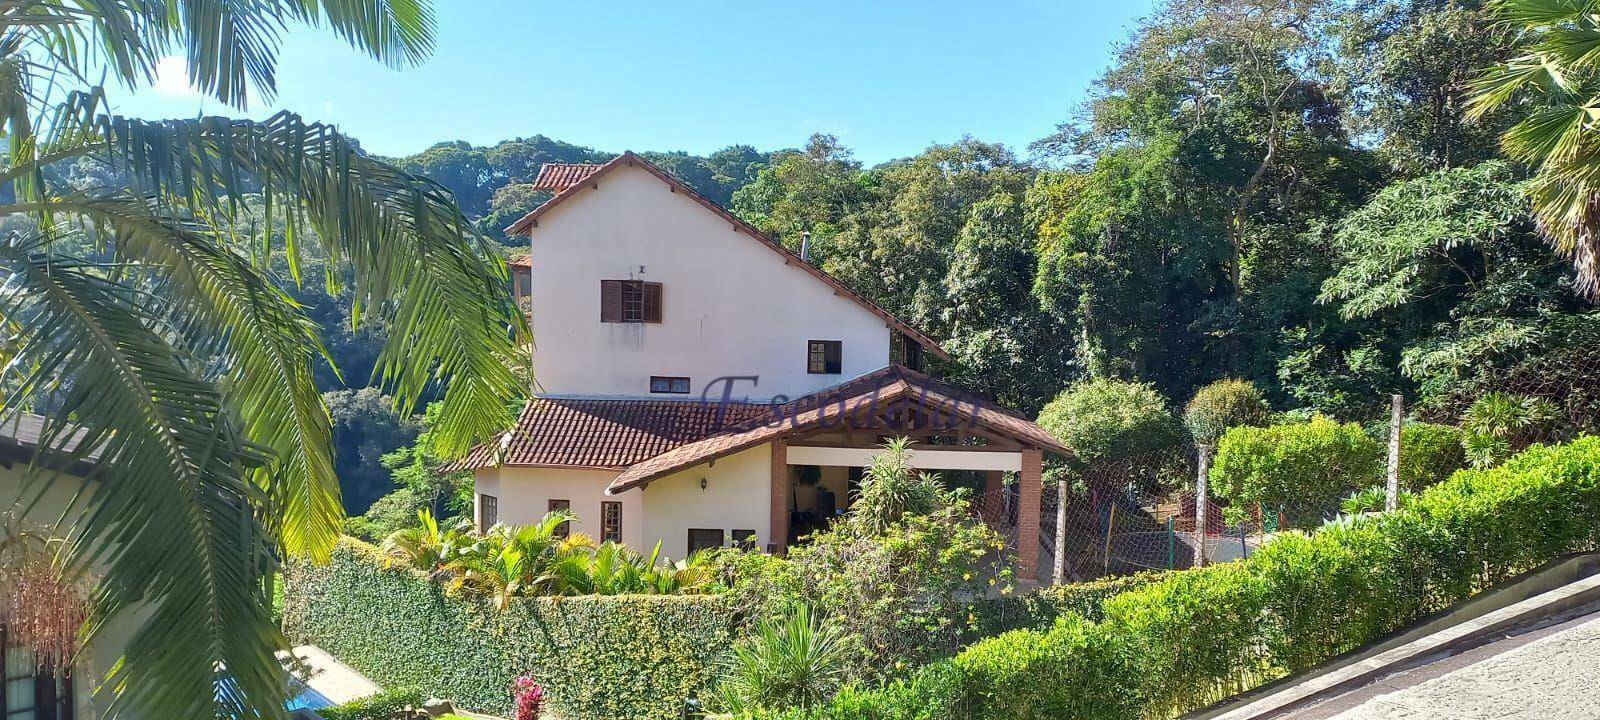 Casa à venda, 428 m² por R$ 1.960.000,00 - Alpes da Cantareira - Mairiporã/SP